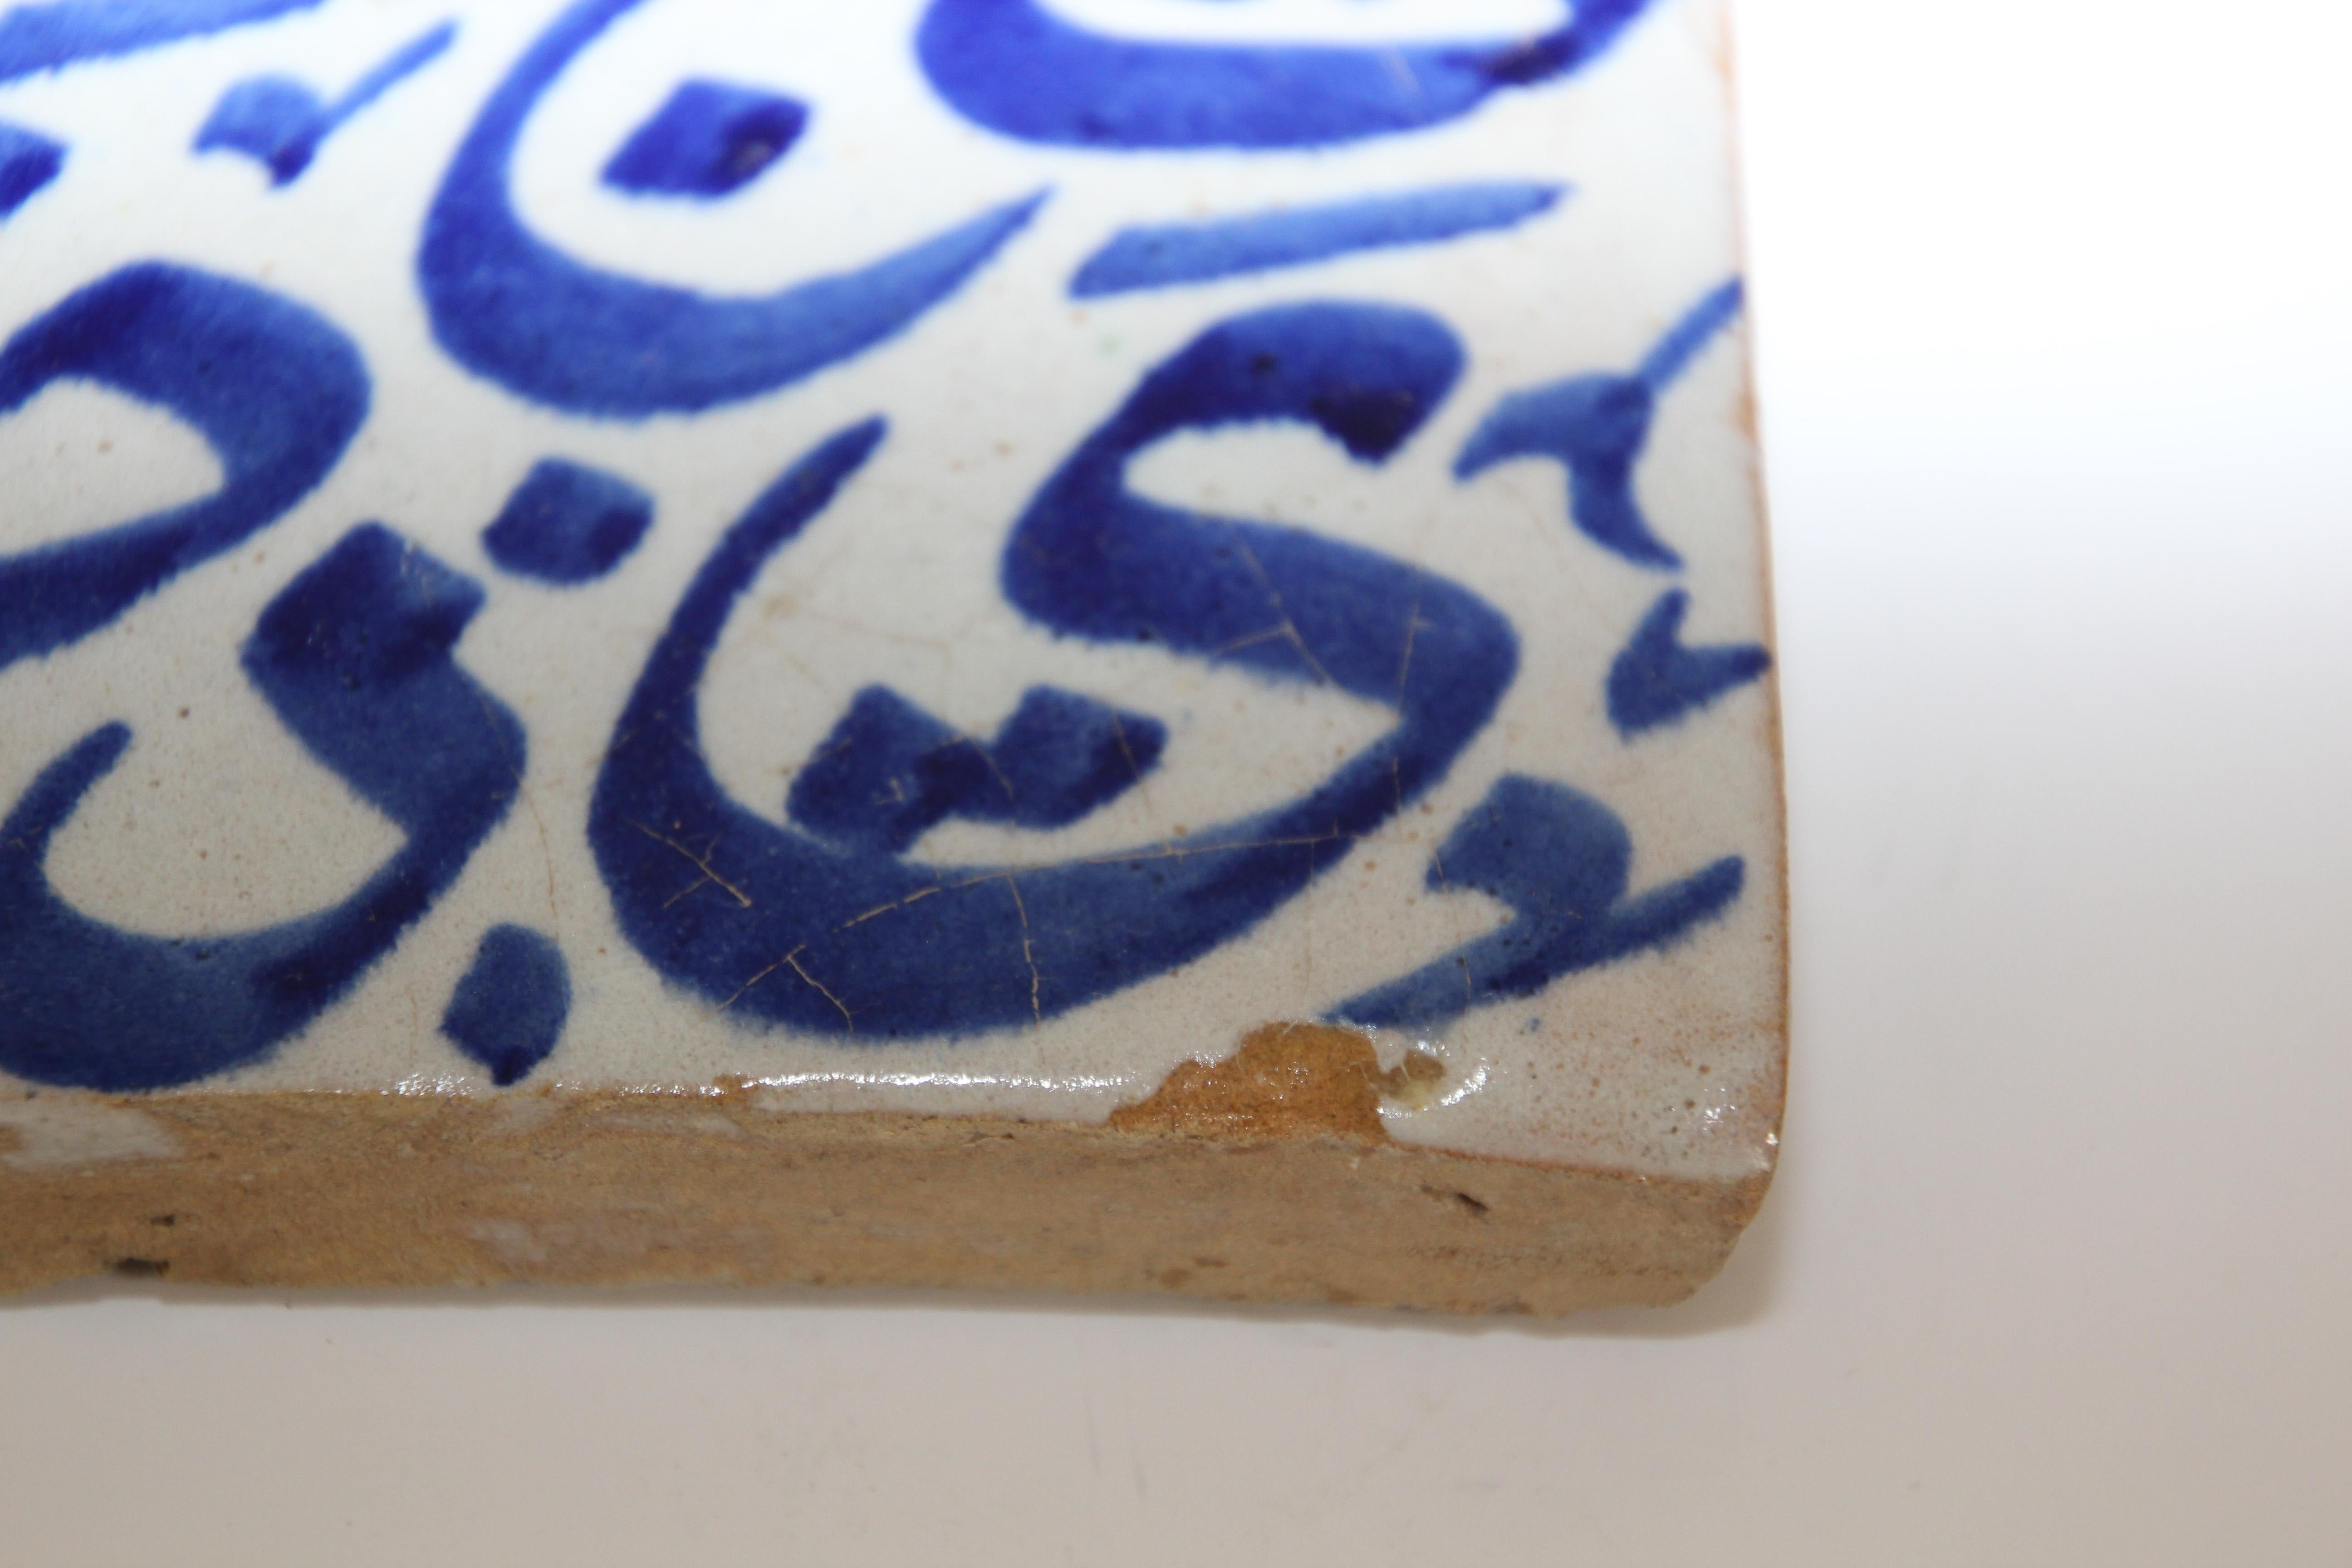 Moroccan Moorish Tile with Blue Arabic Writing